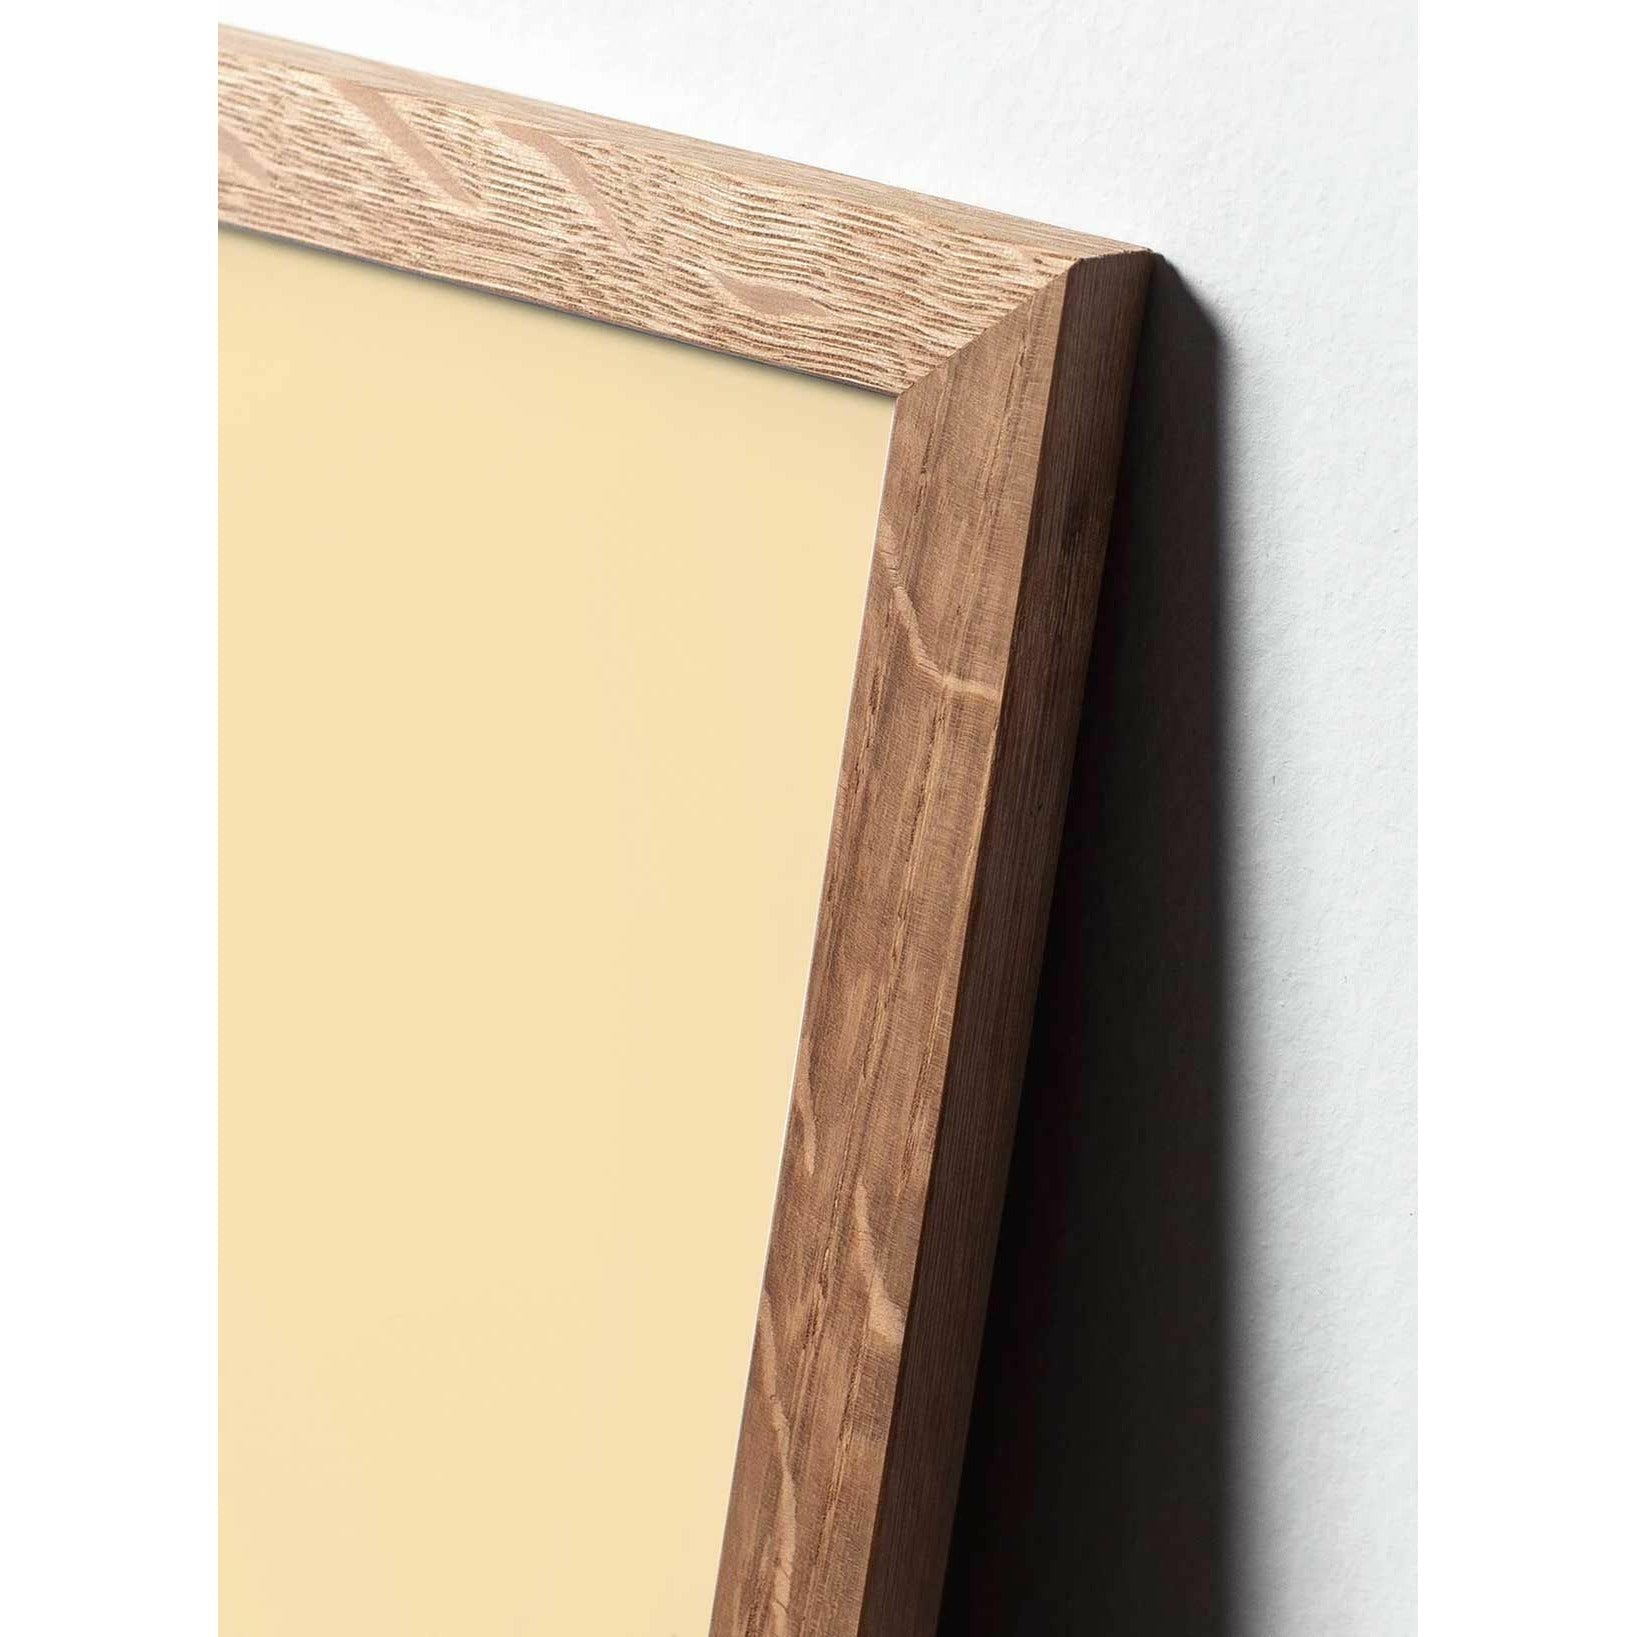 Póster clásico de Snowdrop de creación, marco hecho de madera clara A5, fondo verde